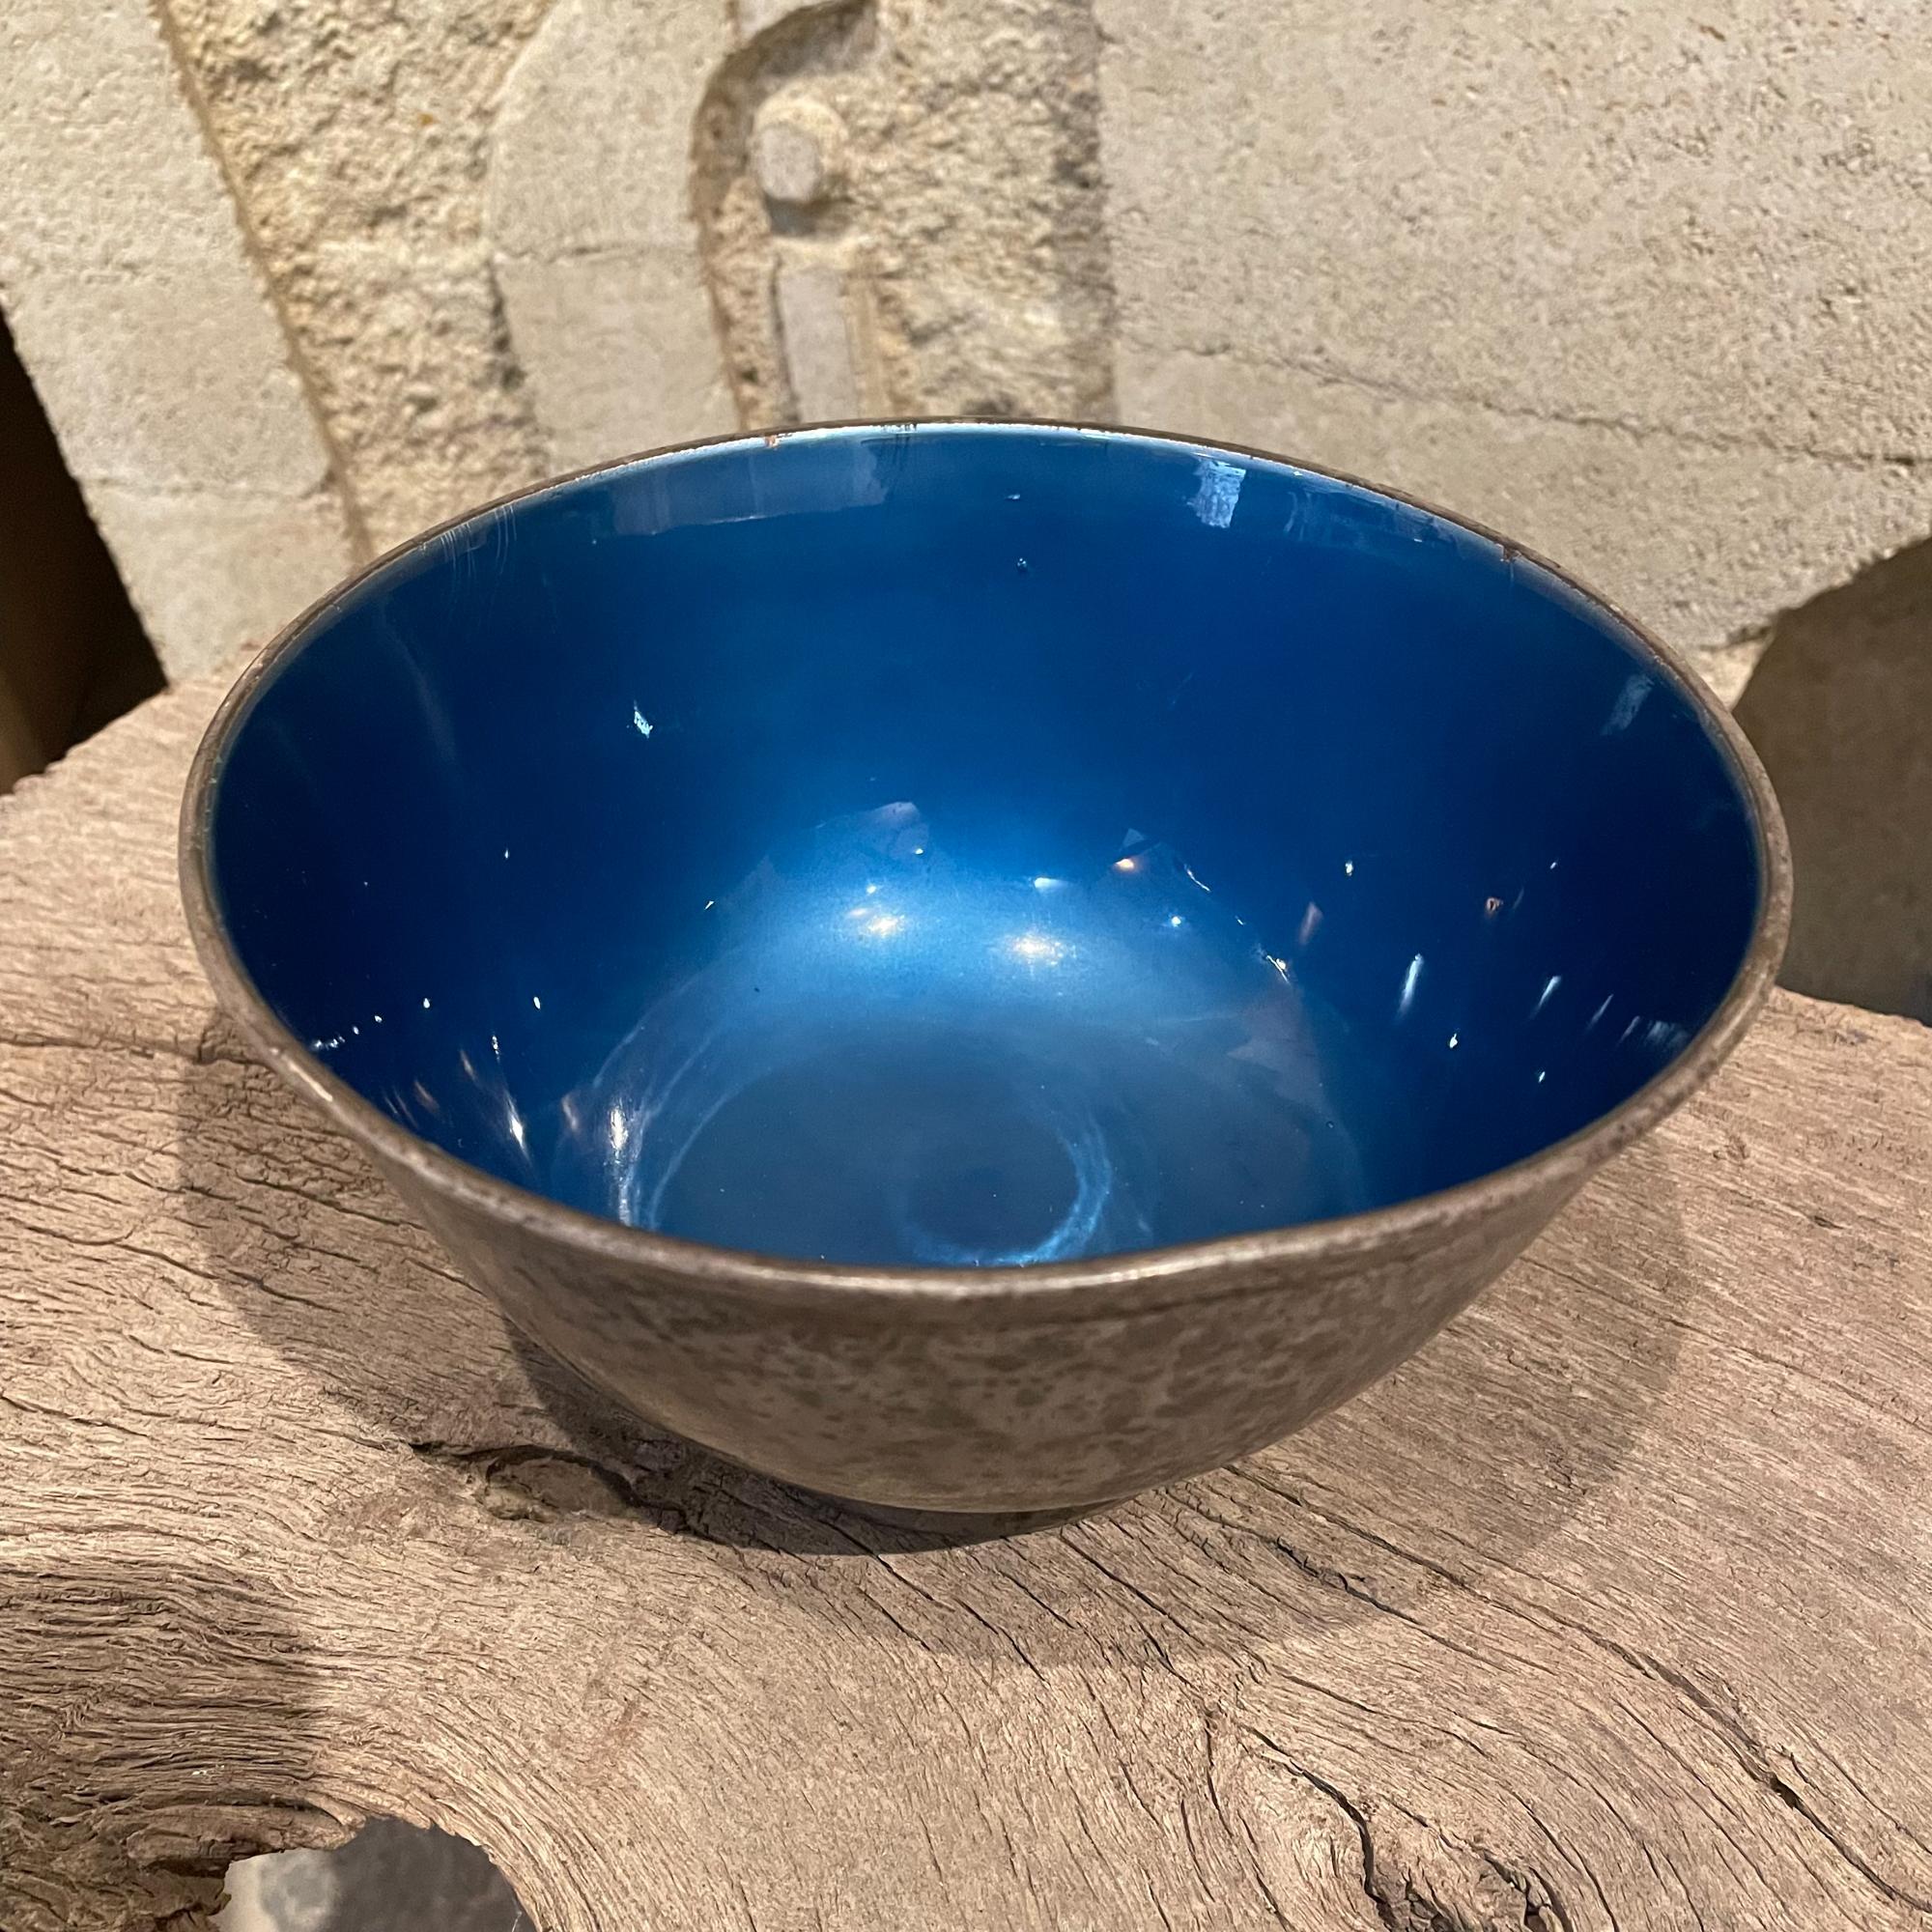 Nous vous offrons : Towle Silversmiths mid century silver plate blue enamel bowl vintage piece circa 1970s.
Mesures : 7 pouces de diamètre x 3,88 pouces
Émail lustré de couleur bleue avec plaque d'argent
Poinçon de l'artisan TOWLE EP